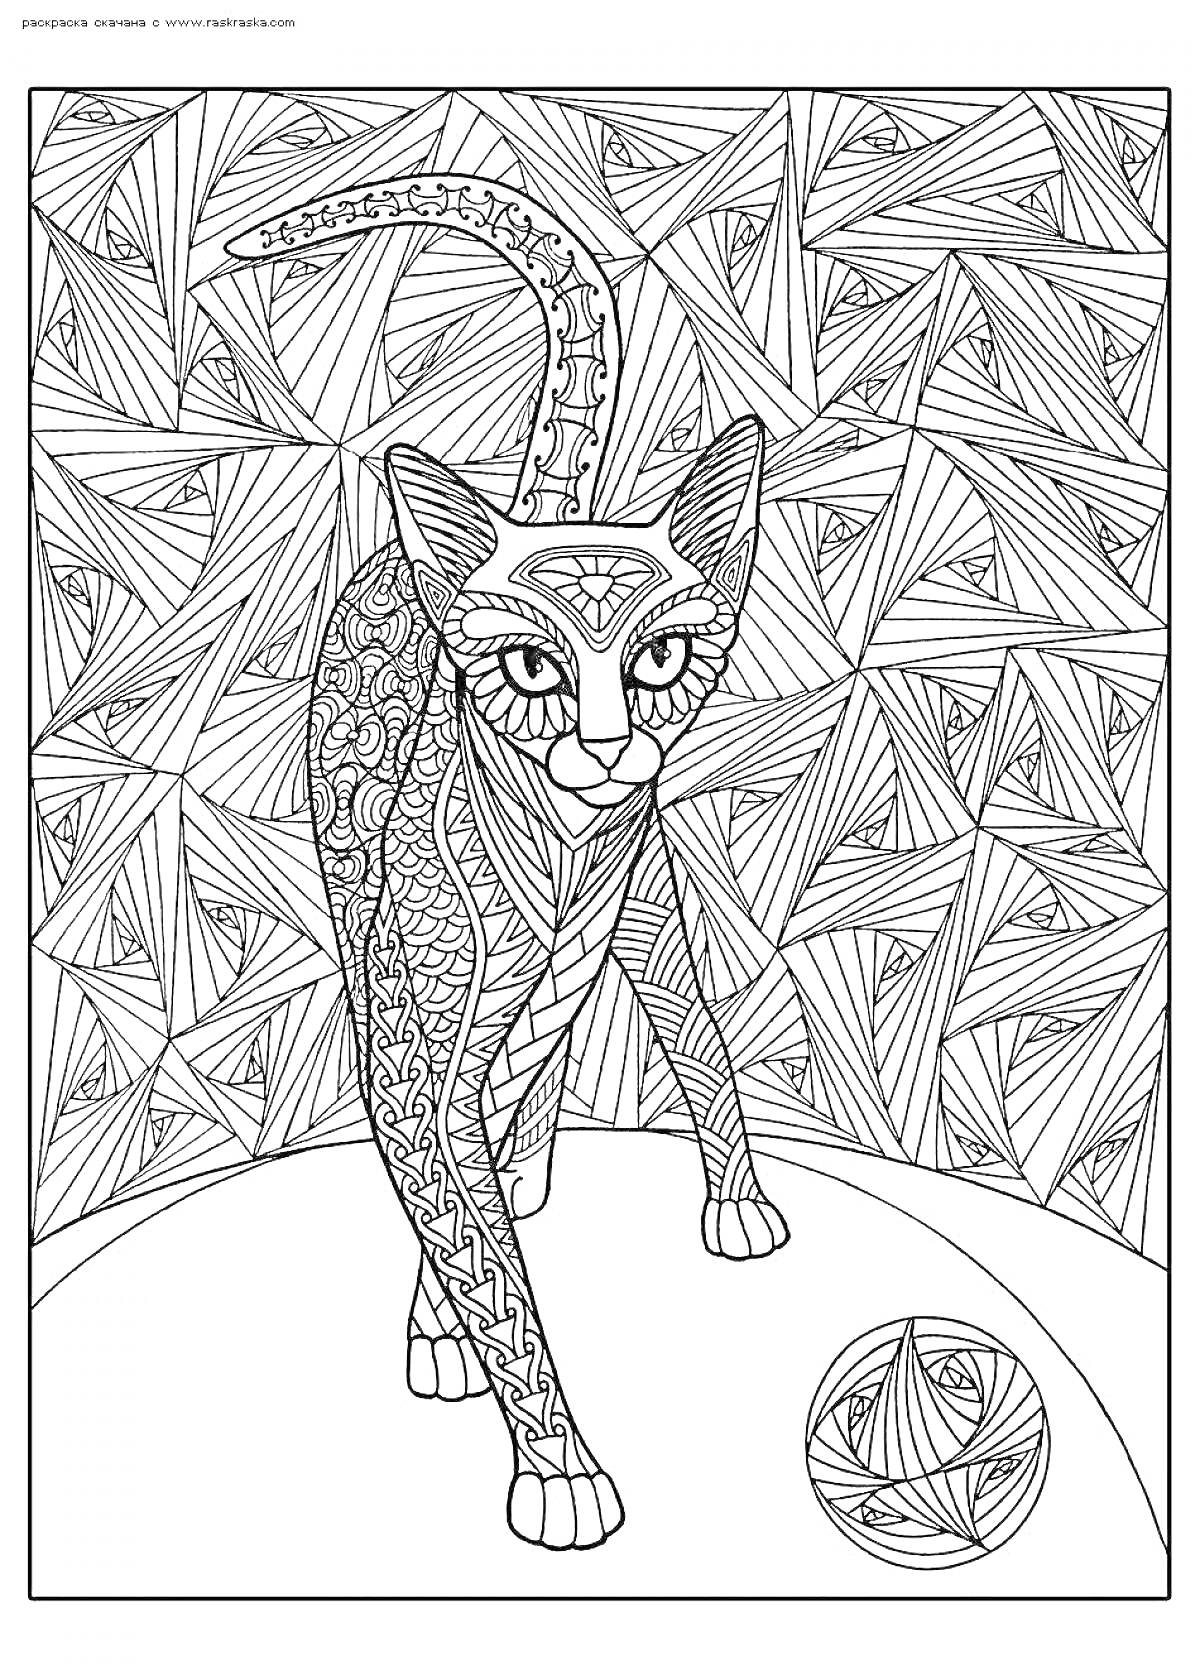 Арт кот с узорами на теле и хвосте, геометрический фон, шар с узорами